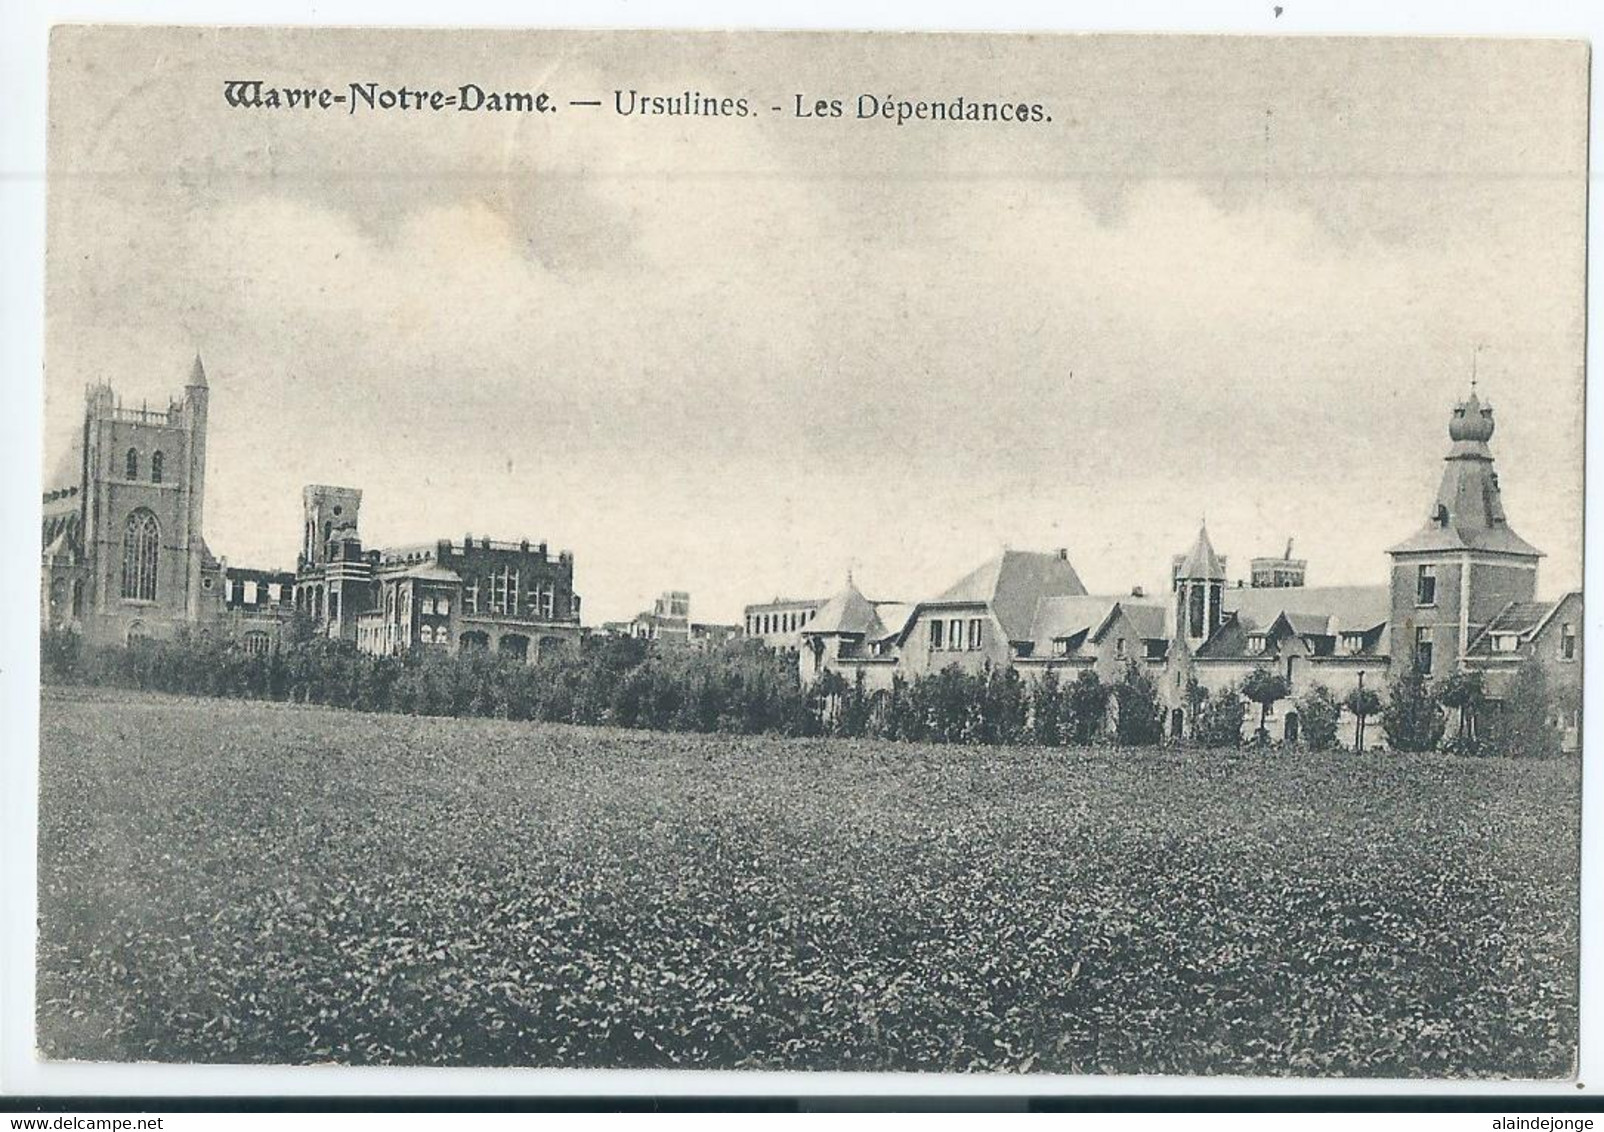 Wavre-Notre-Dame - Onze-Lieve-Vrouw-Waver - Institut Des Ursulines - Les Dépendances - 1919 - Sint-Katelijne-Waver